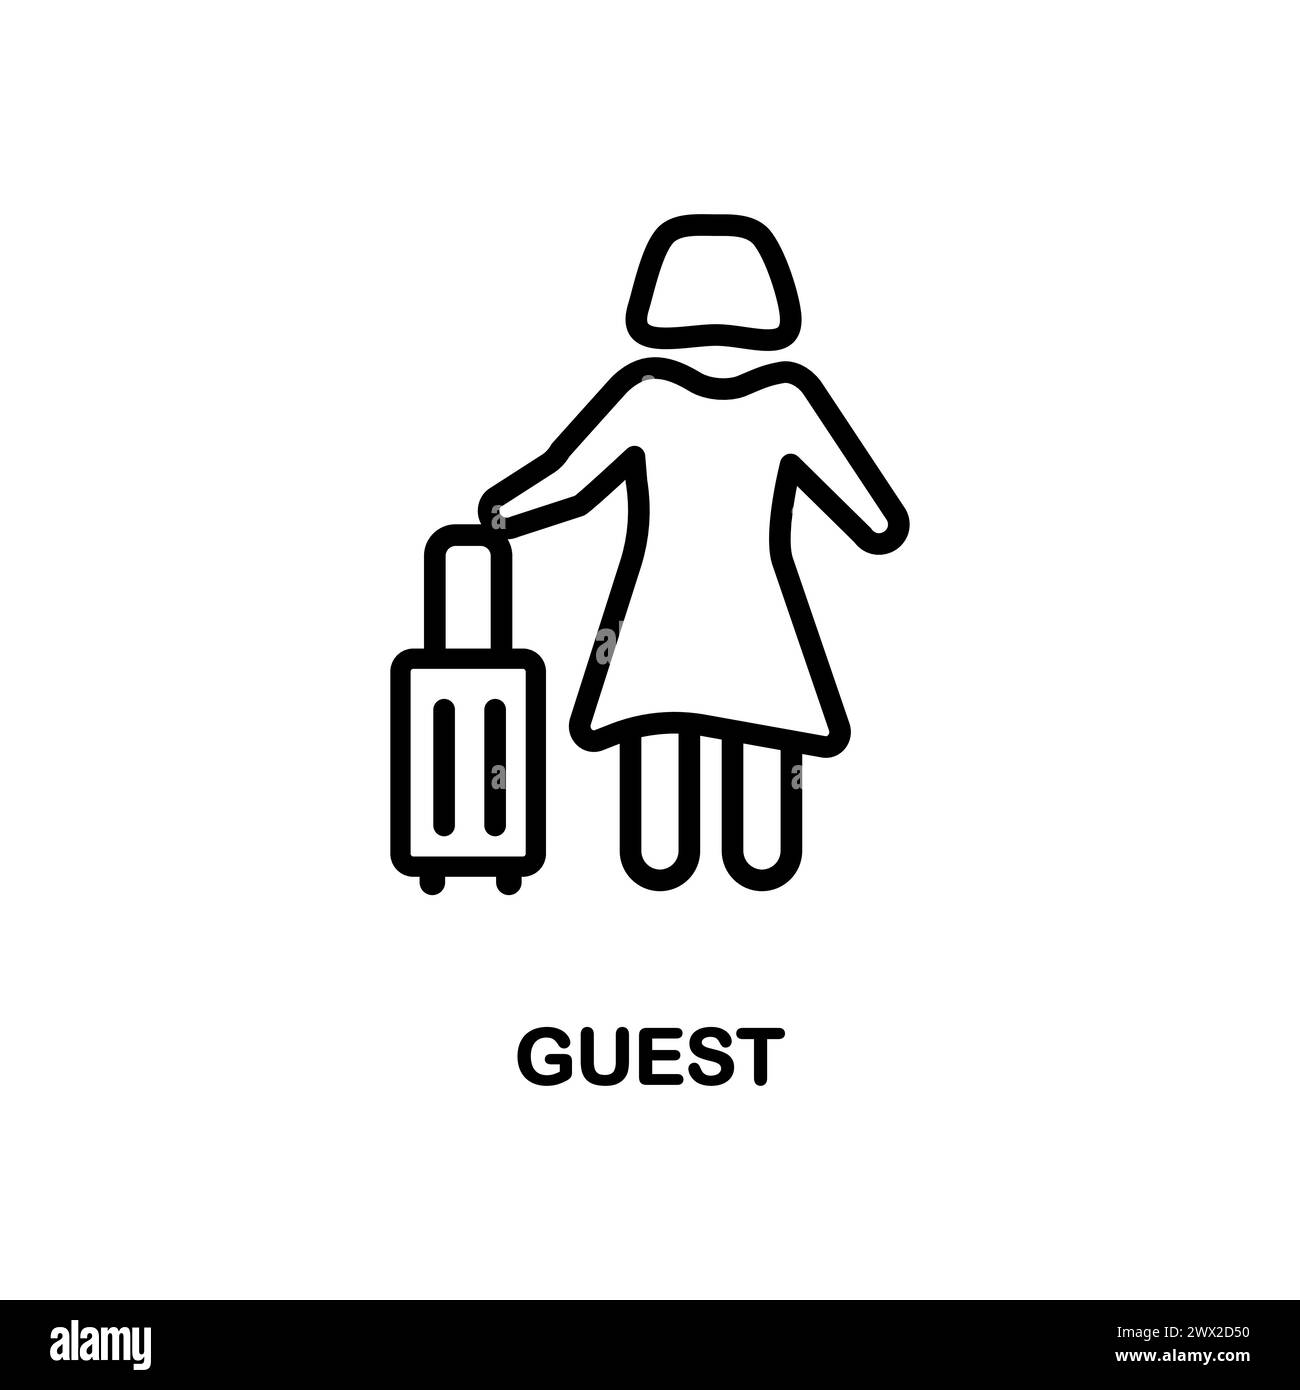 Icona Guest lineare. Design moderno del logo degli ospiti su sfondo bianco della collezione Hotel and Restaurant. Adatto per l'uso su applicazioni Web, ap mobile Illustrazione Vettoriale